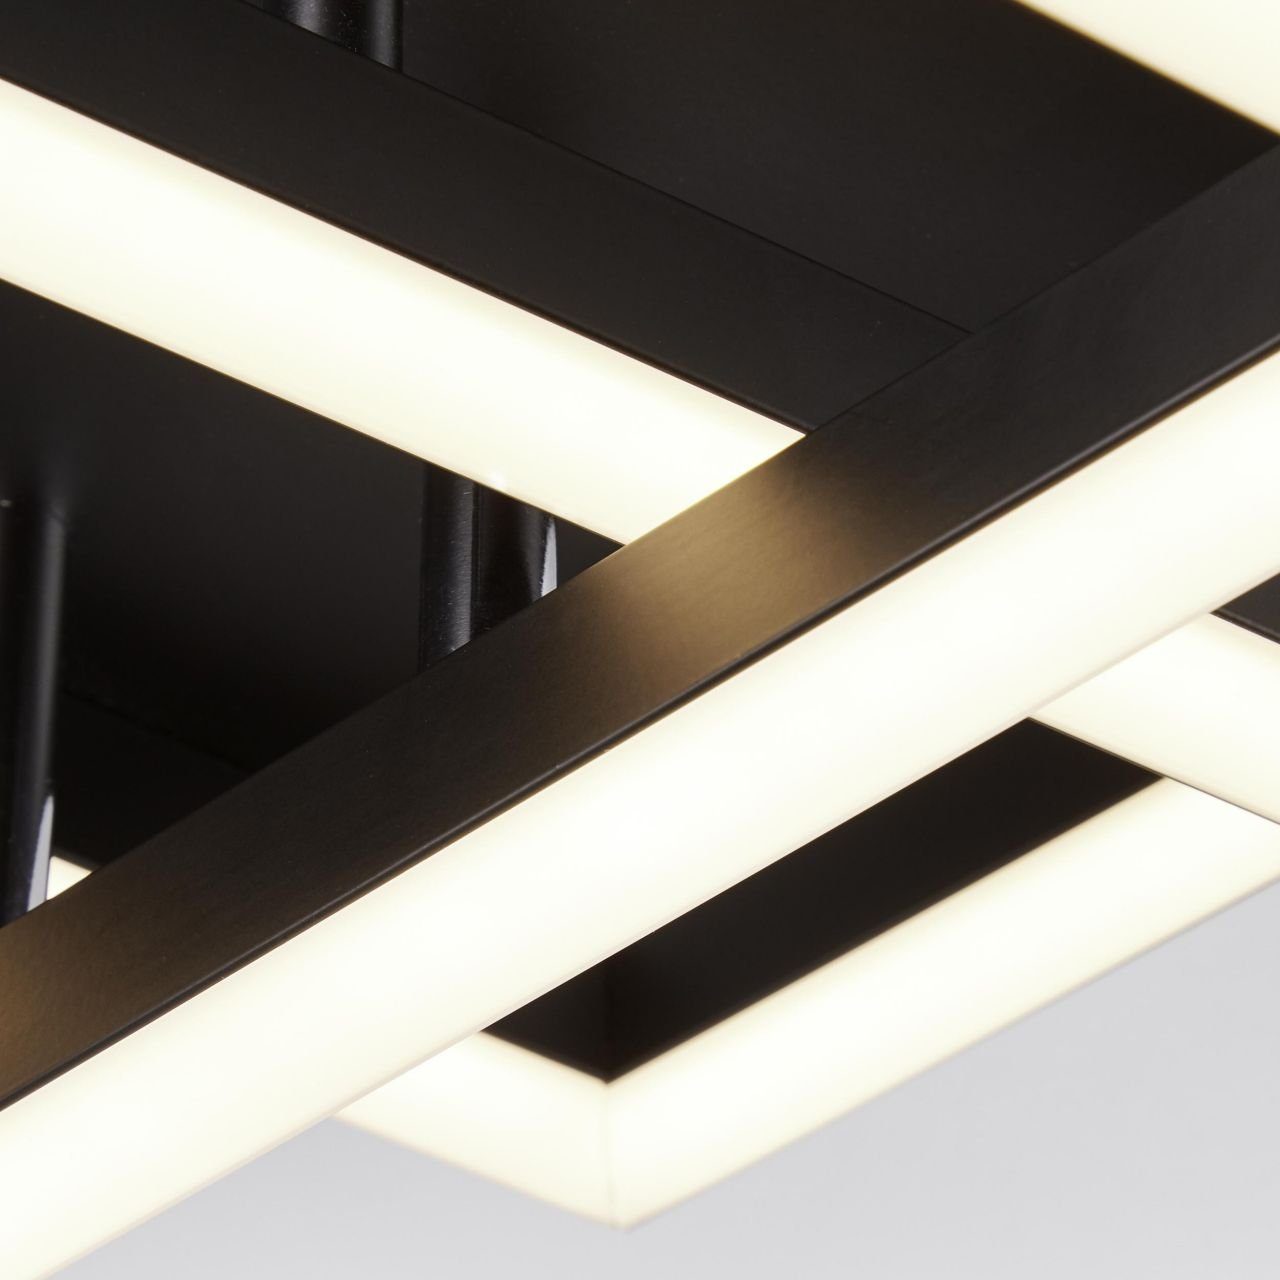 Lampe, schwarz, Kjorn, Metall/Kunststoff, Deckenleuchte 3flg Kjorn LED 3000K, 1x 42W Brilliant Deckenleuchte